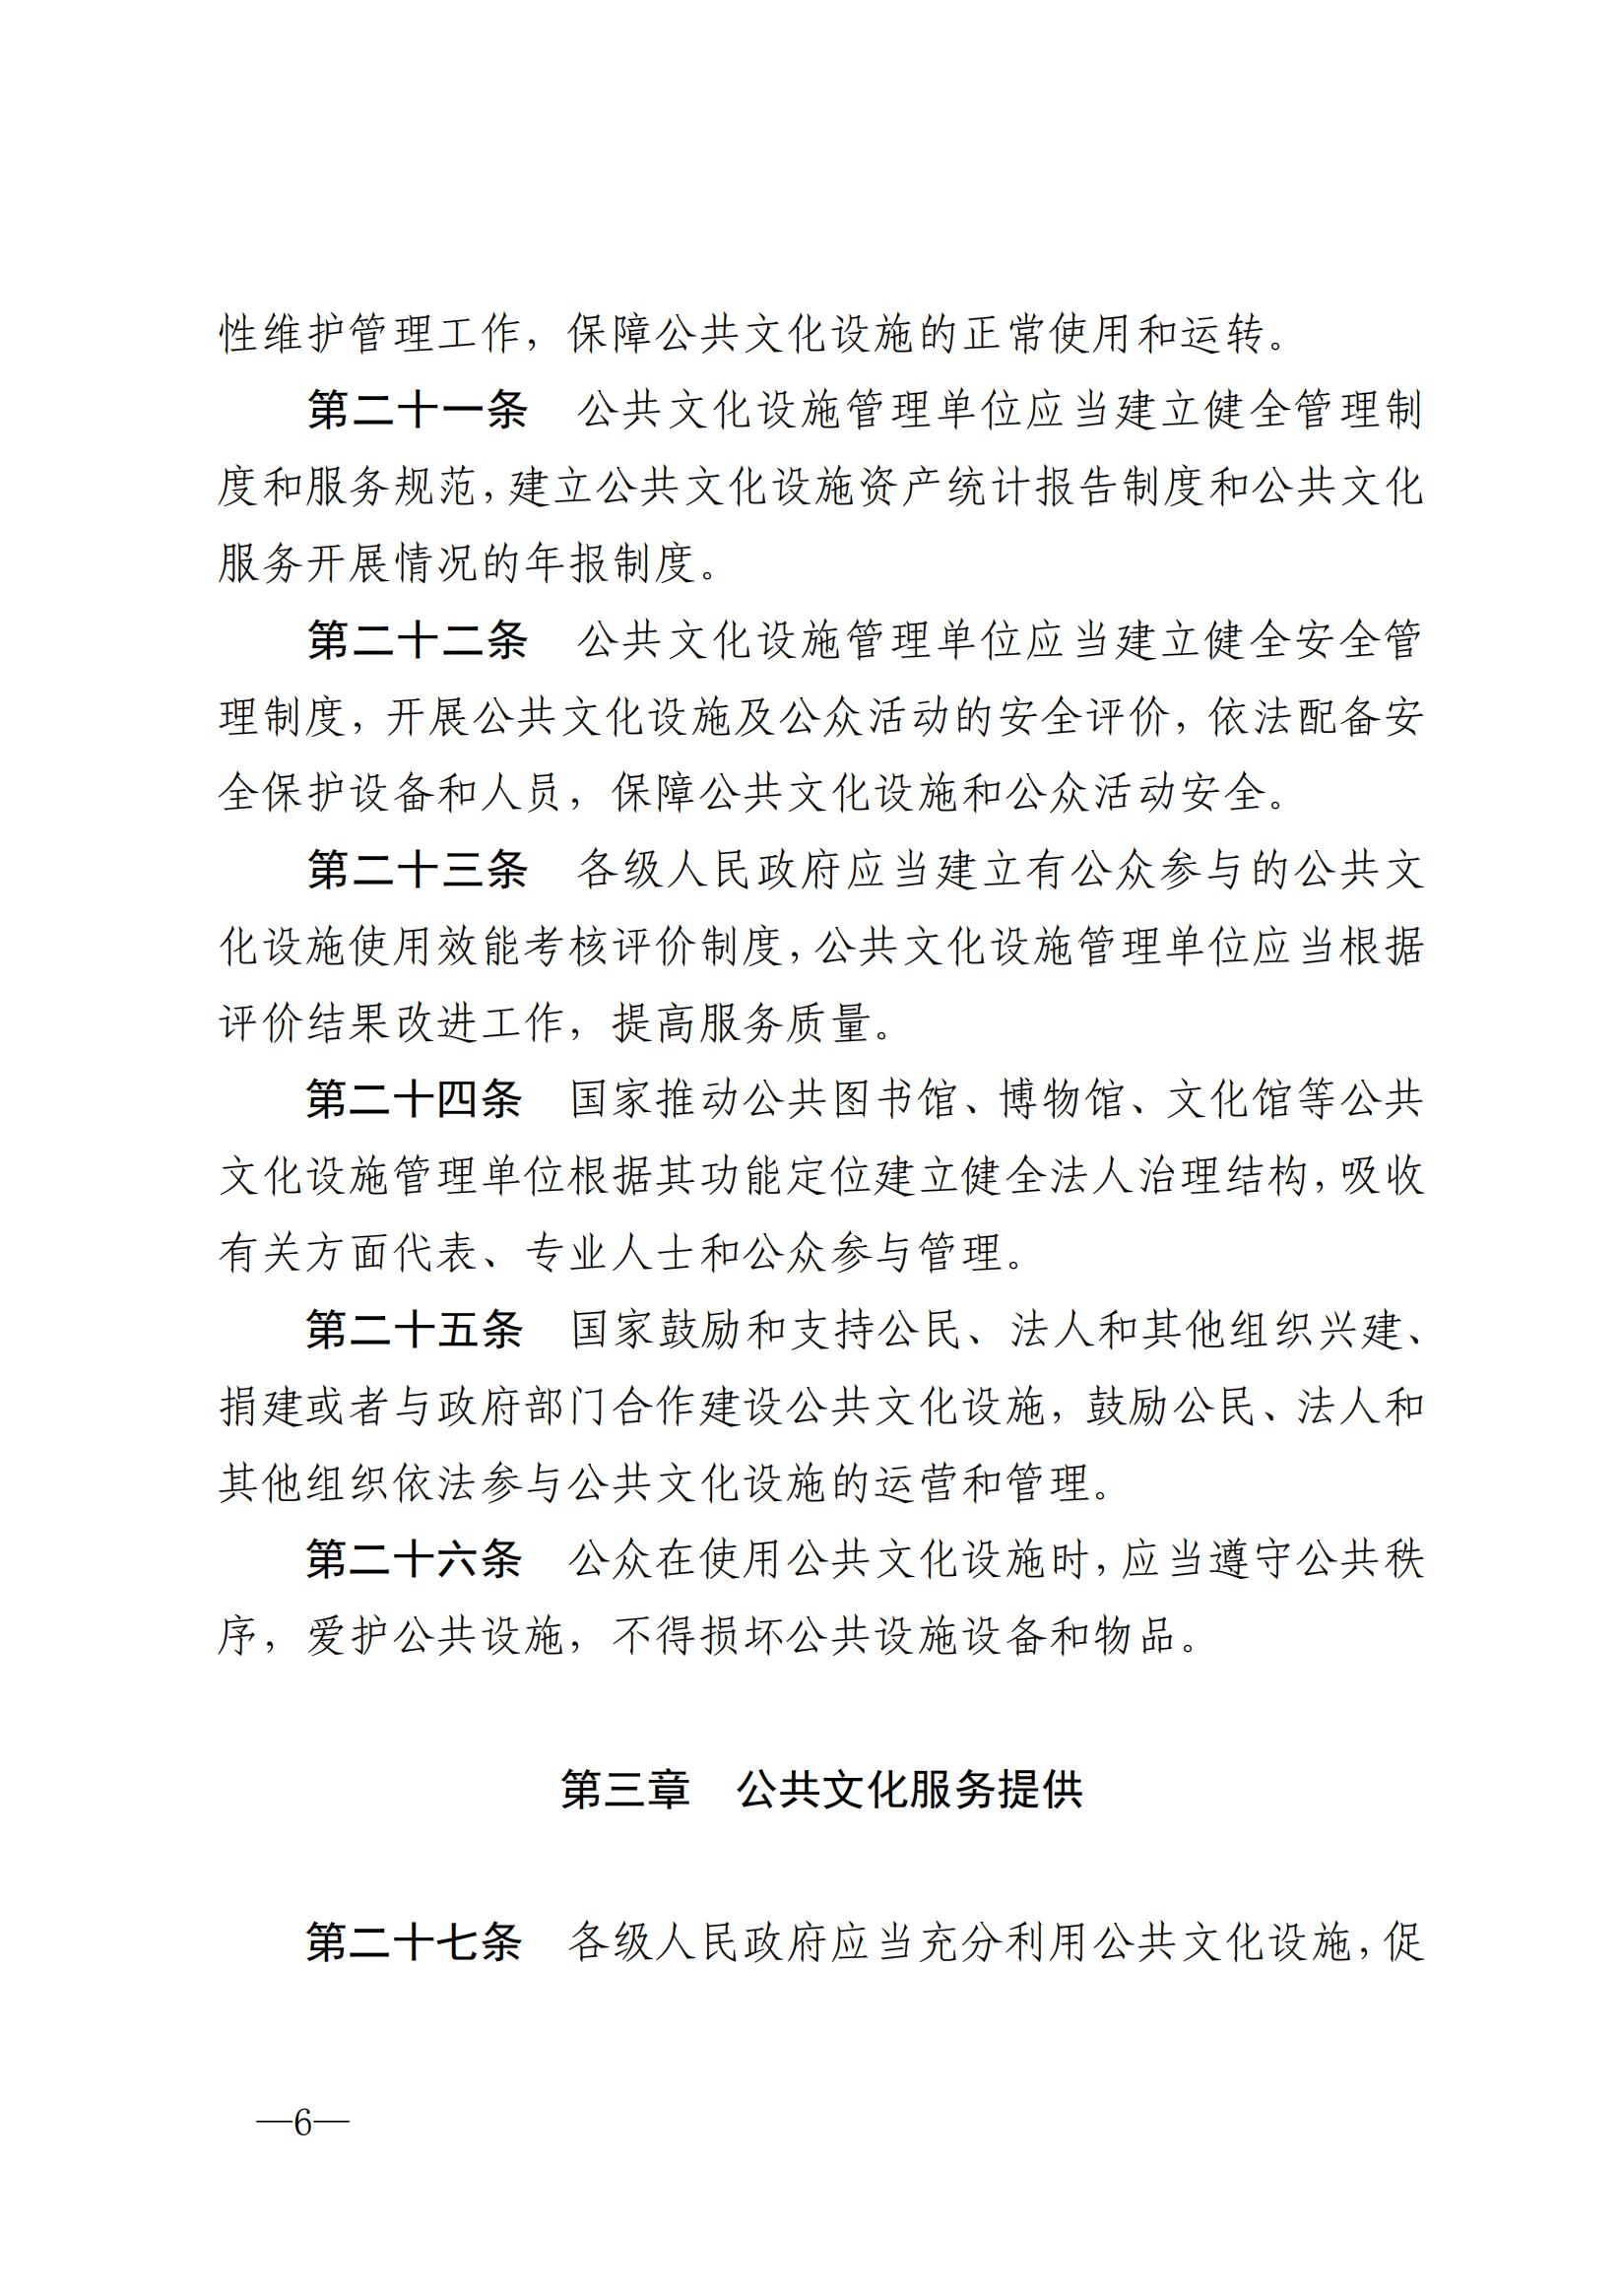 中华人民共和国公共文化服务保障法_05.jpg